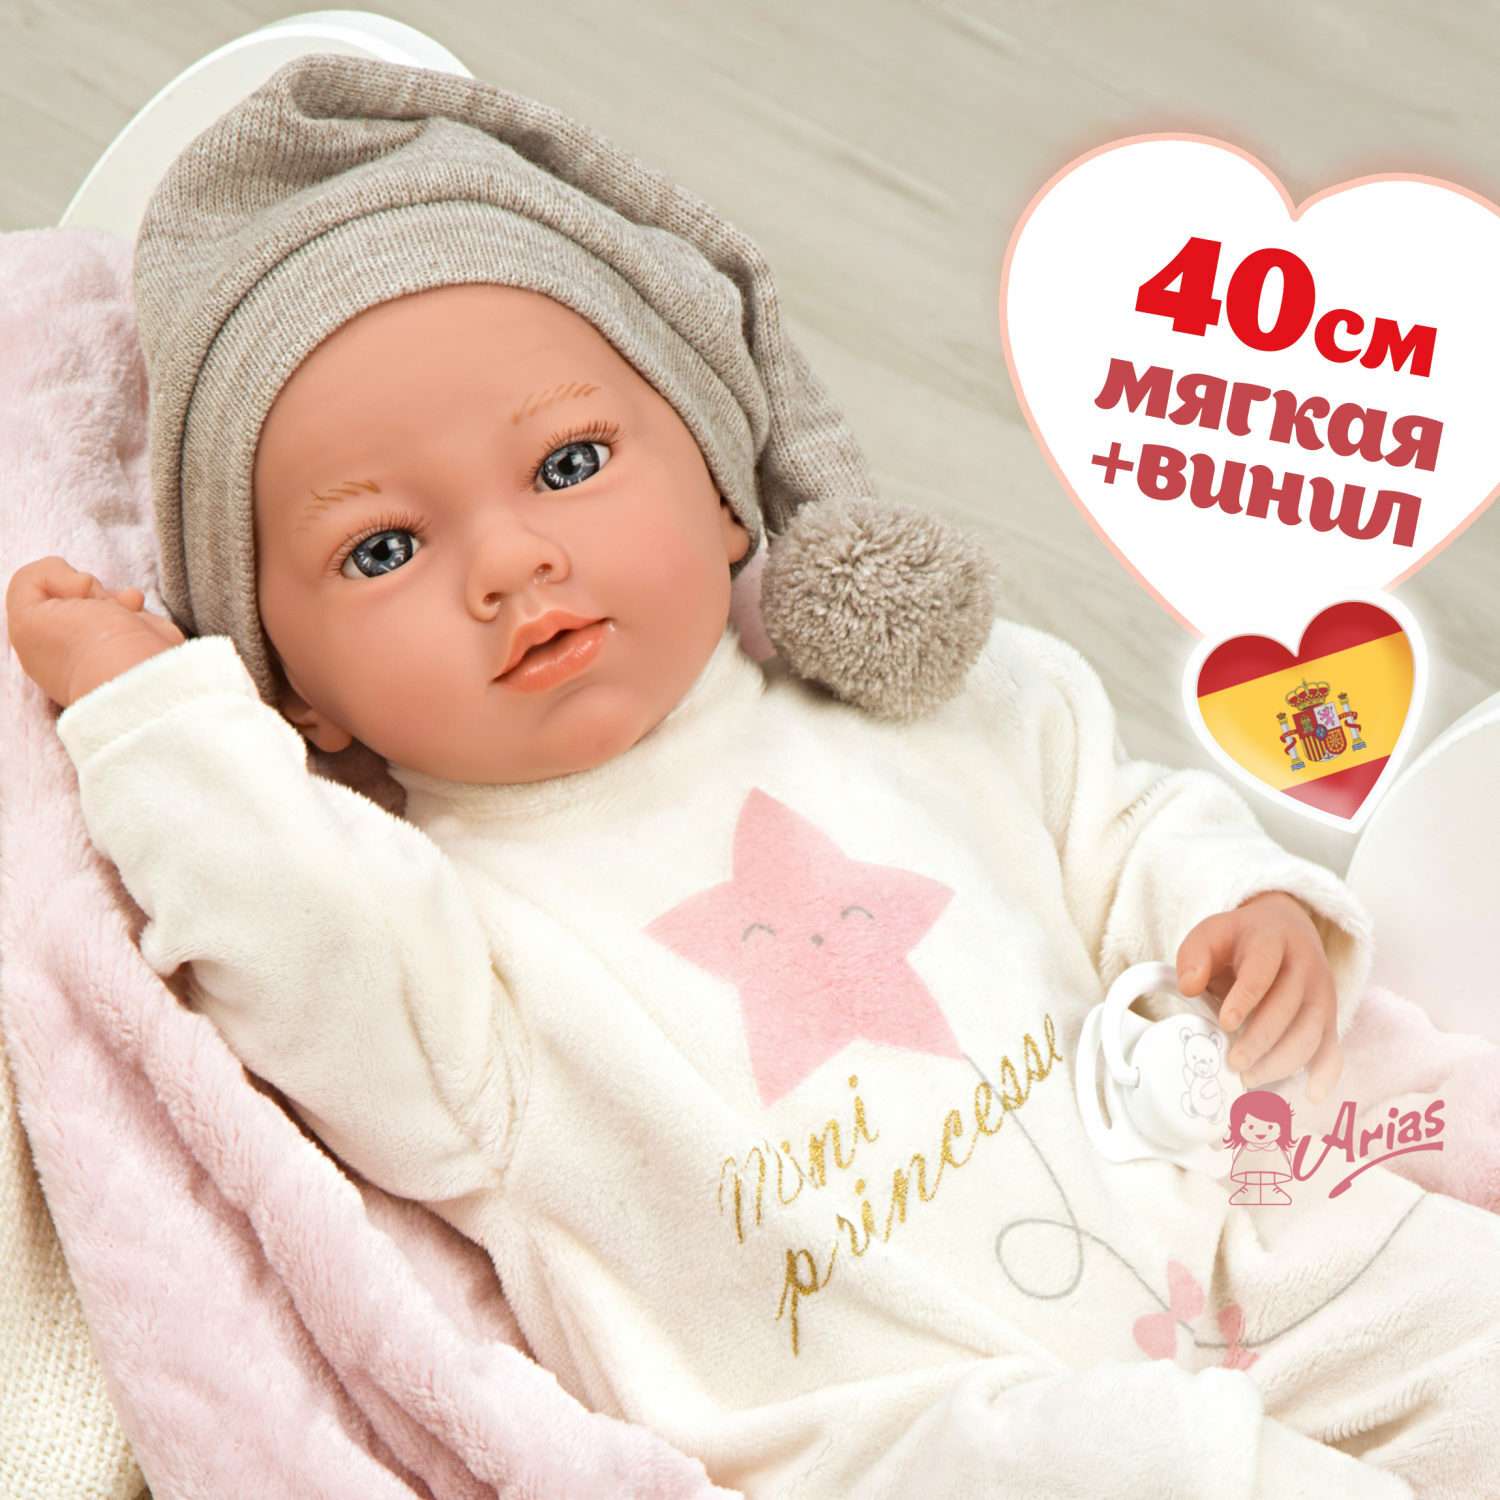 Кукла пупс Arias elegance aria реборн мягкая с соской и розовым одеялом 40 cм Т24478 - фото 1